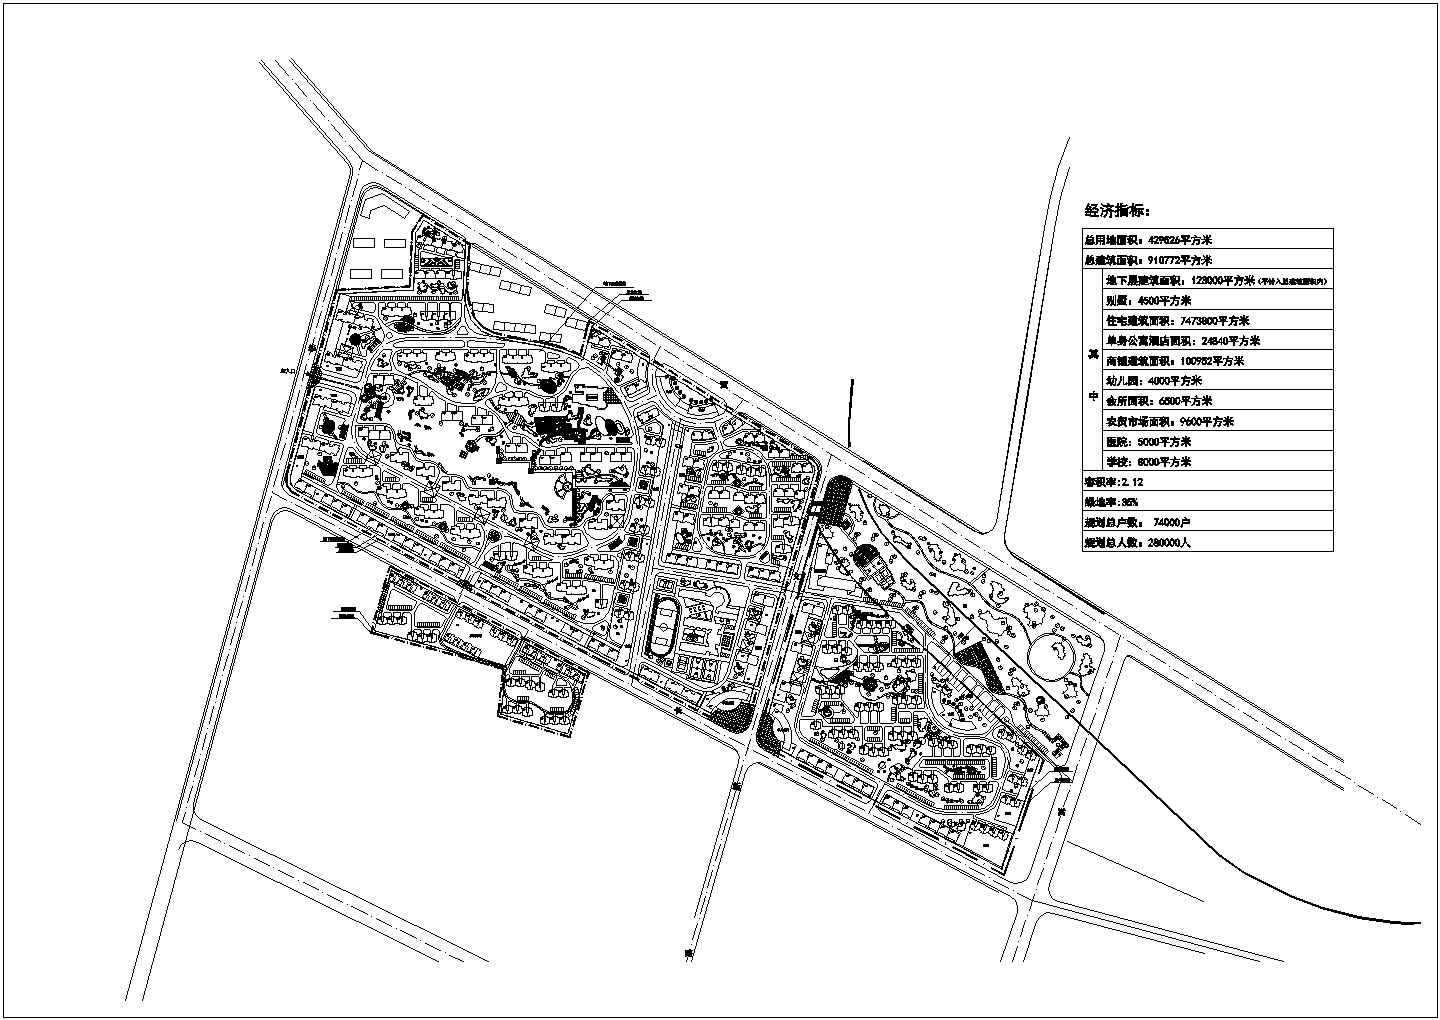 花湖小区的总规划设计建筑总平面图